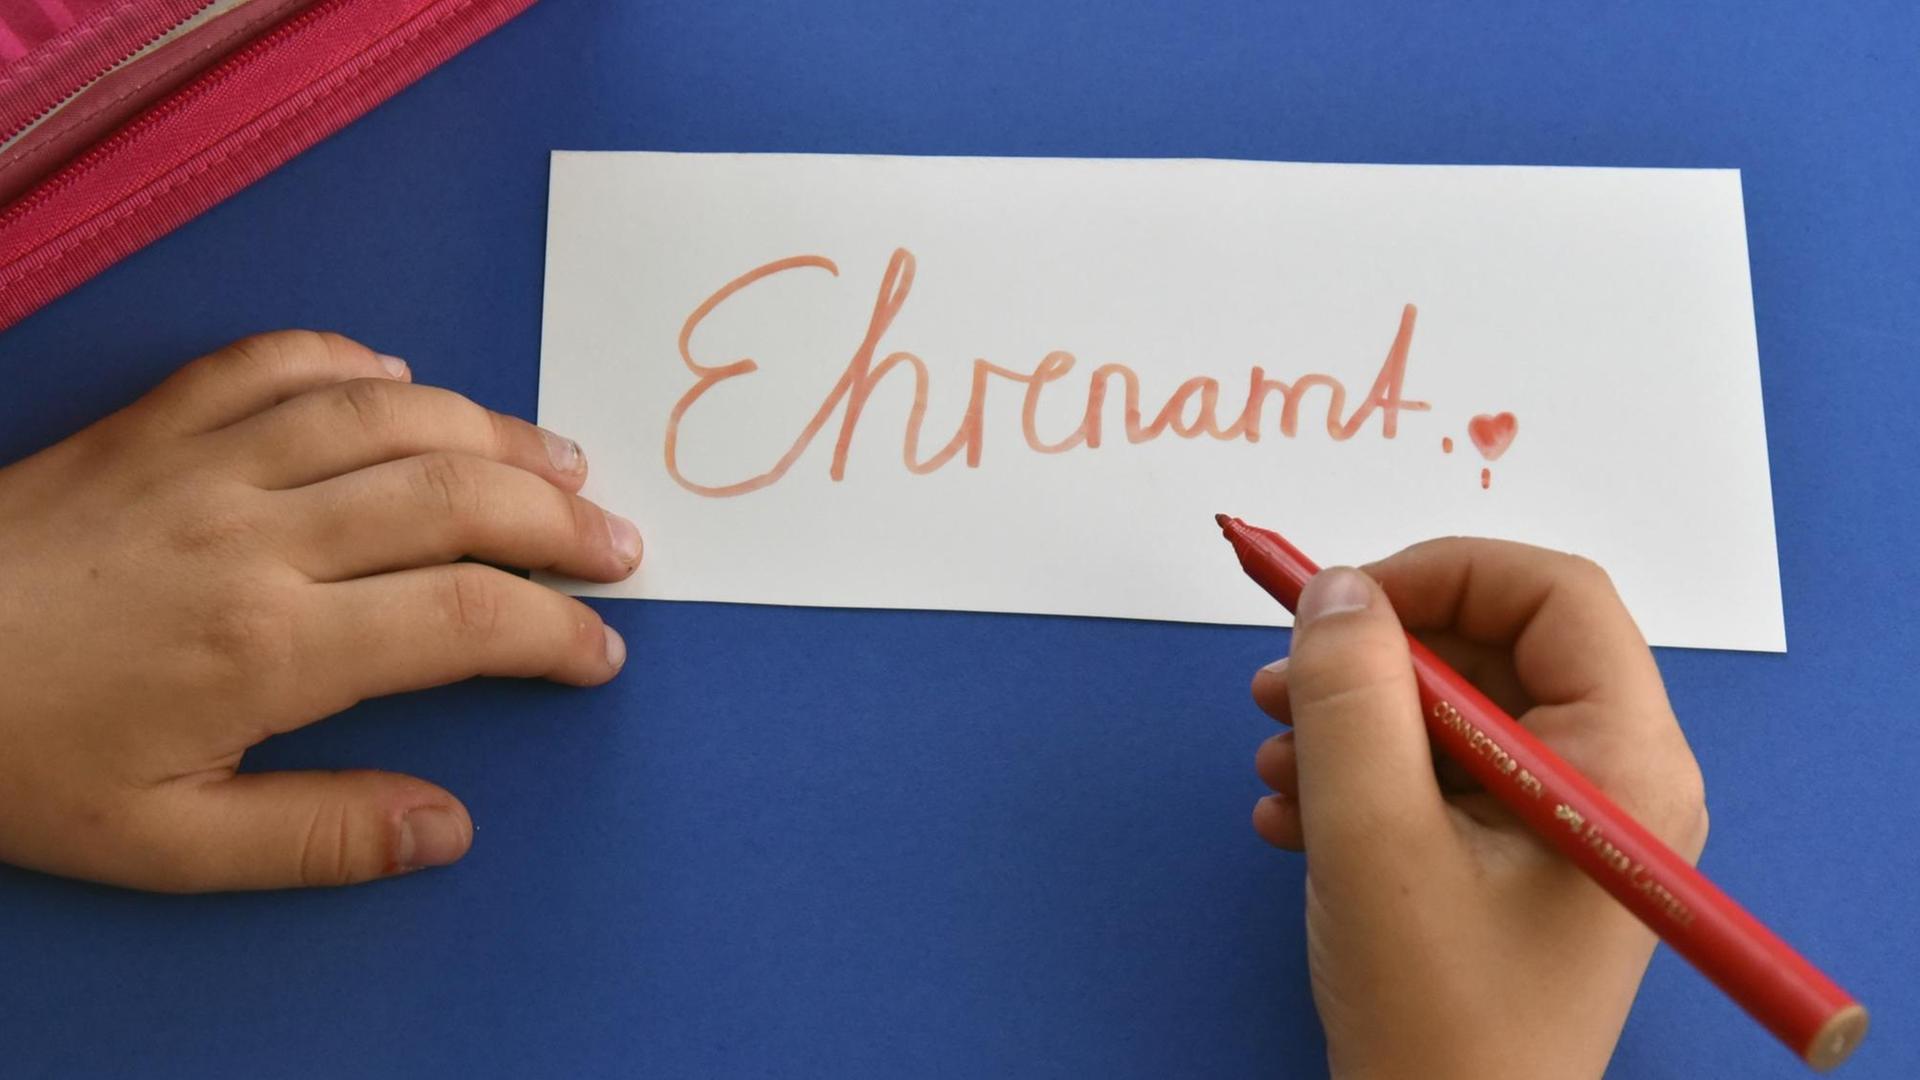 Symbolfoto: Ein Schulkind schreibt das Wort "Ehrenamt" auf ein Blatt Papier (Foto vom 31.05.2016).